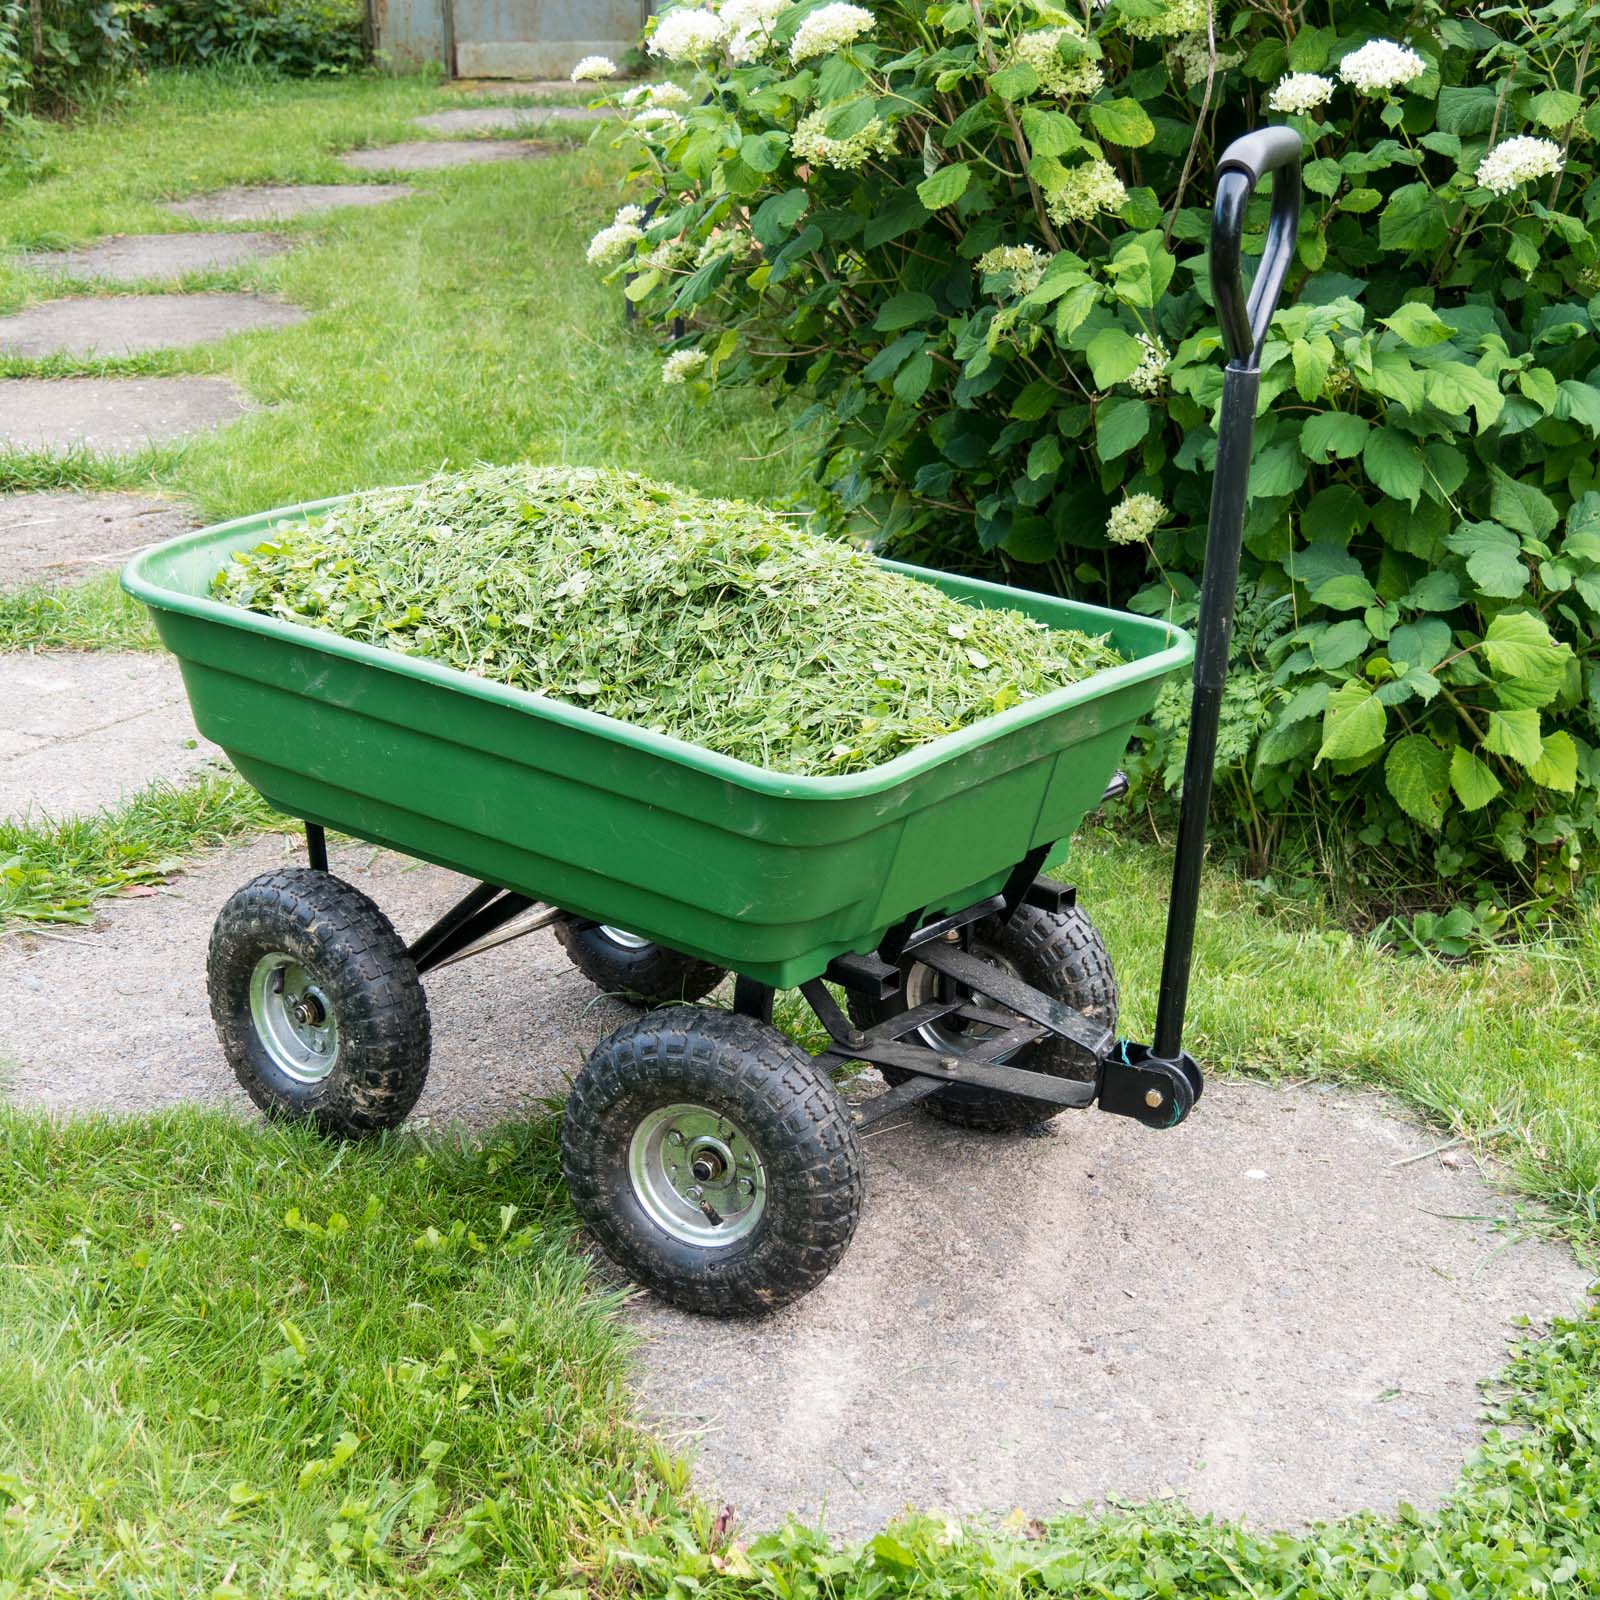 Carro para jardín con ruedas carga máx de 550 kg carretilla de jardín con  lona extraíble transporte fácil con rejilla adicional